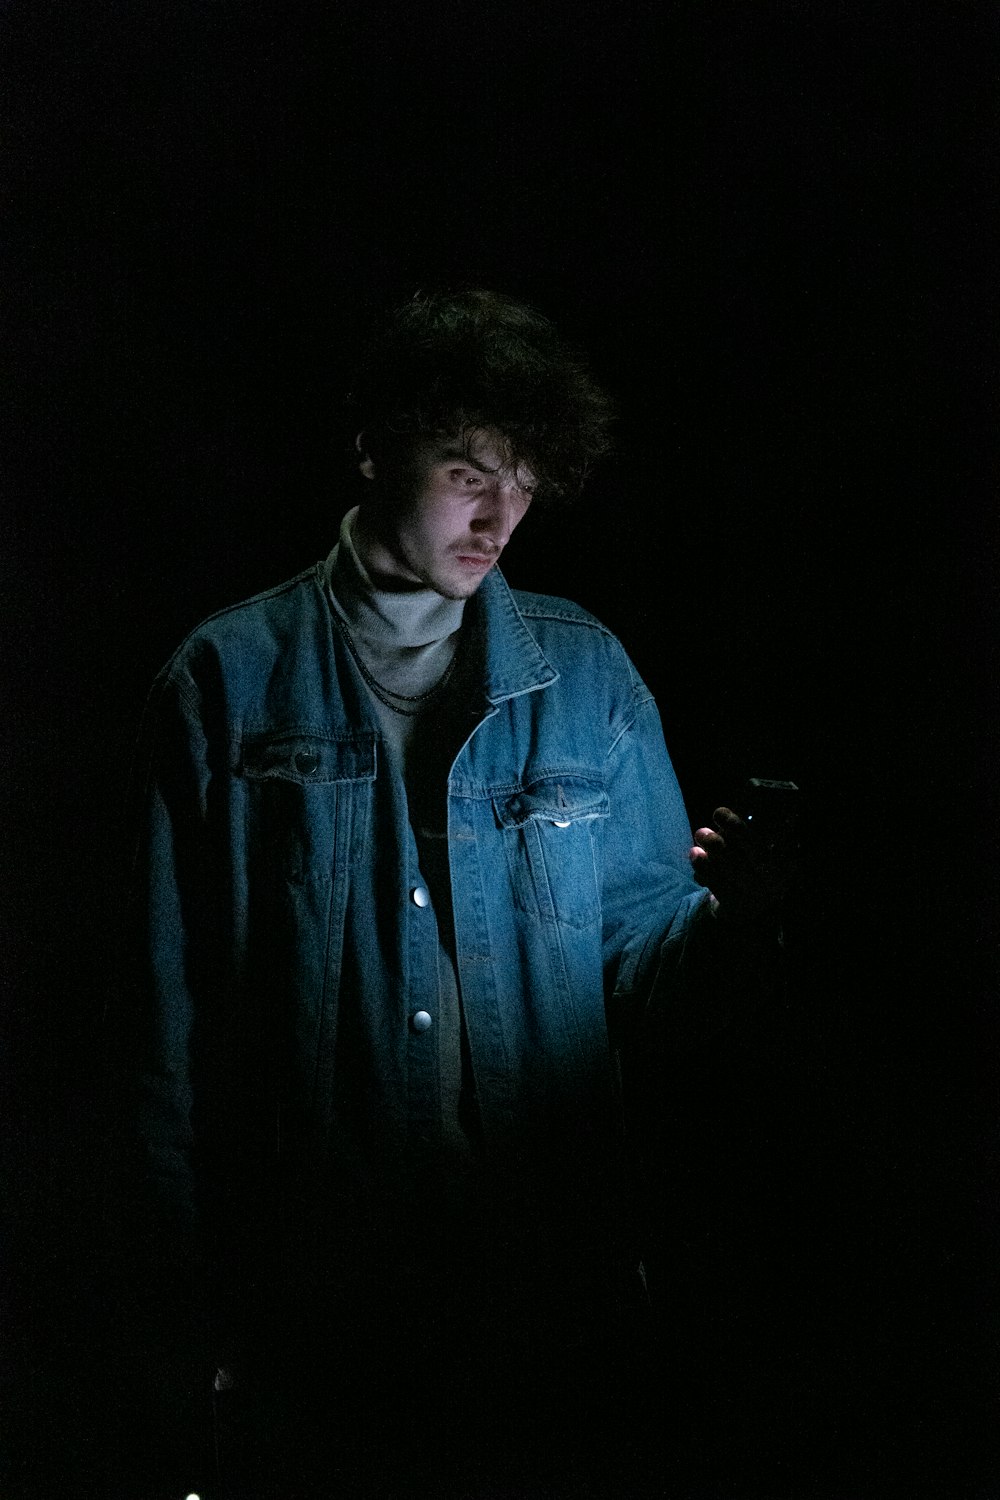 어둠 속에 서서 휴대폰을 보고 있는 남자